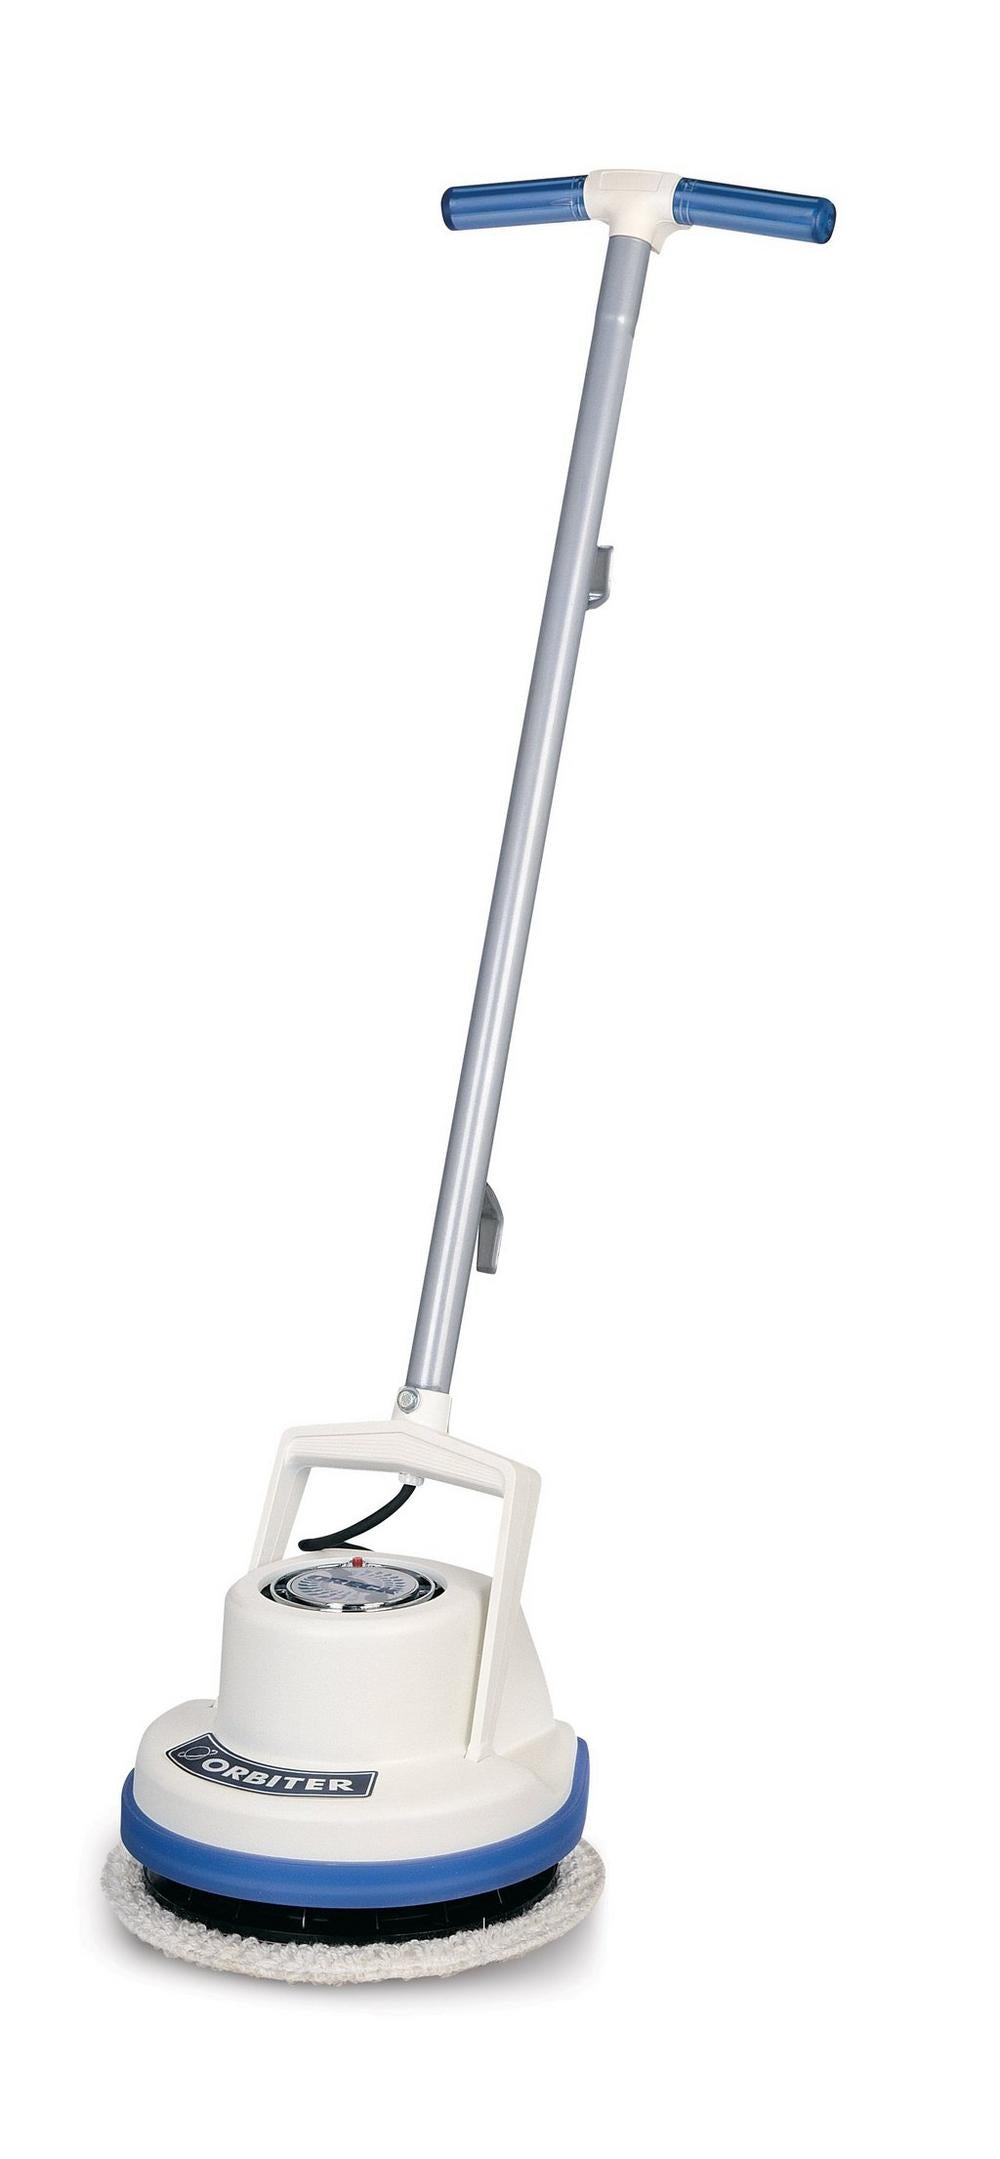 Oreck Orbiter Multi-Purpose Floor Cleaning Machine - White